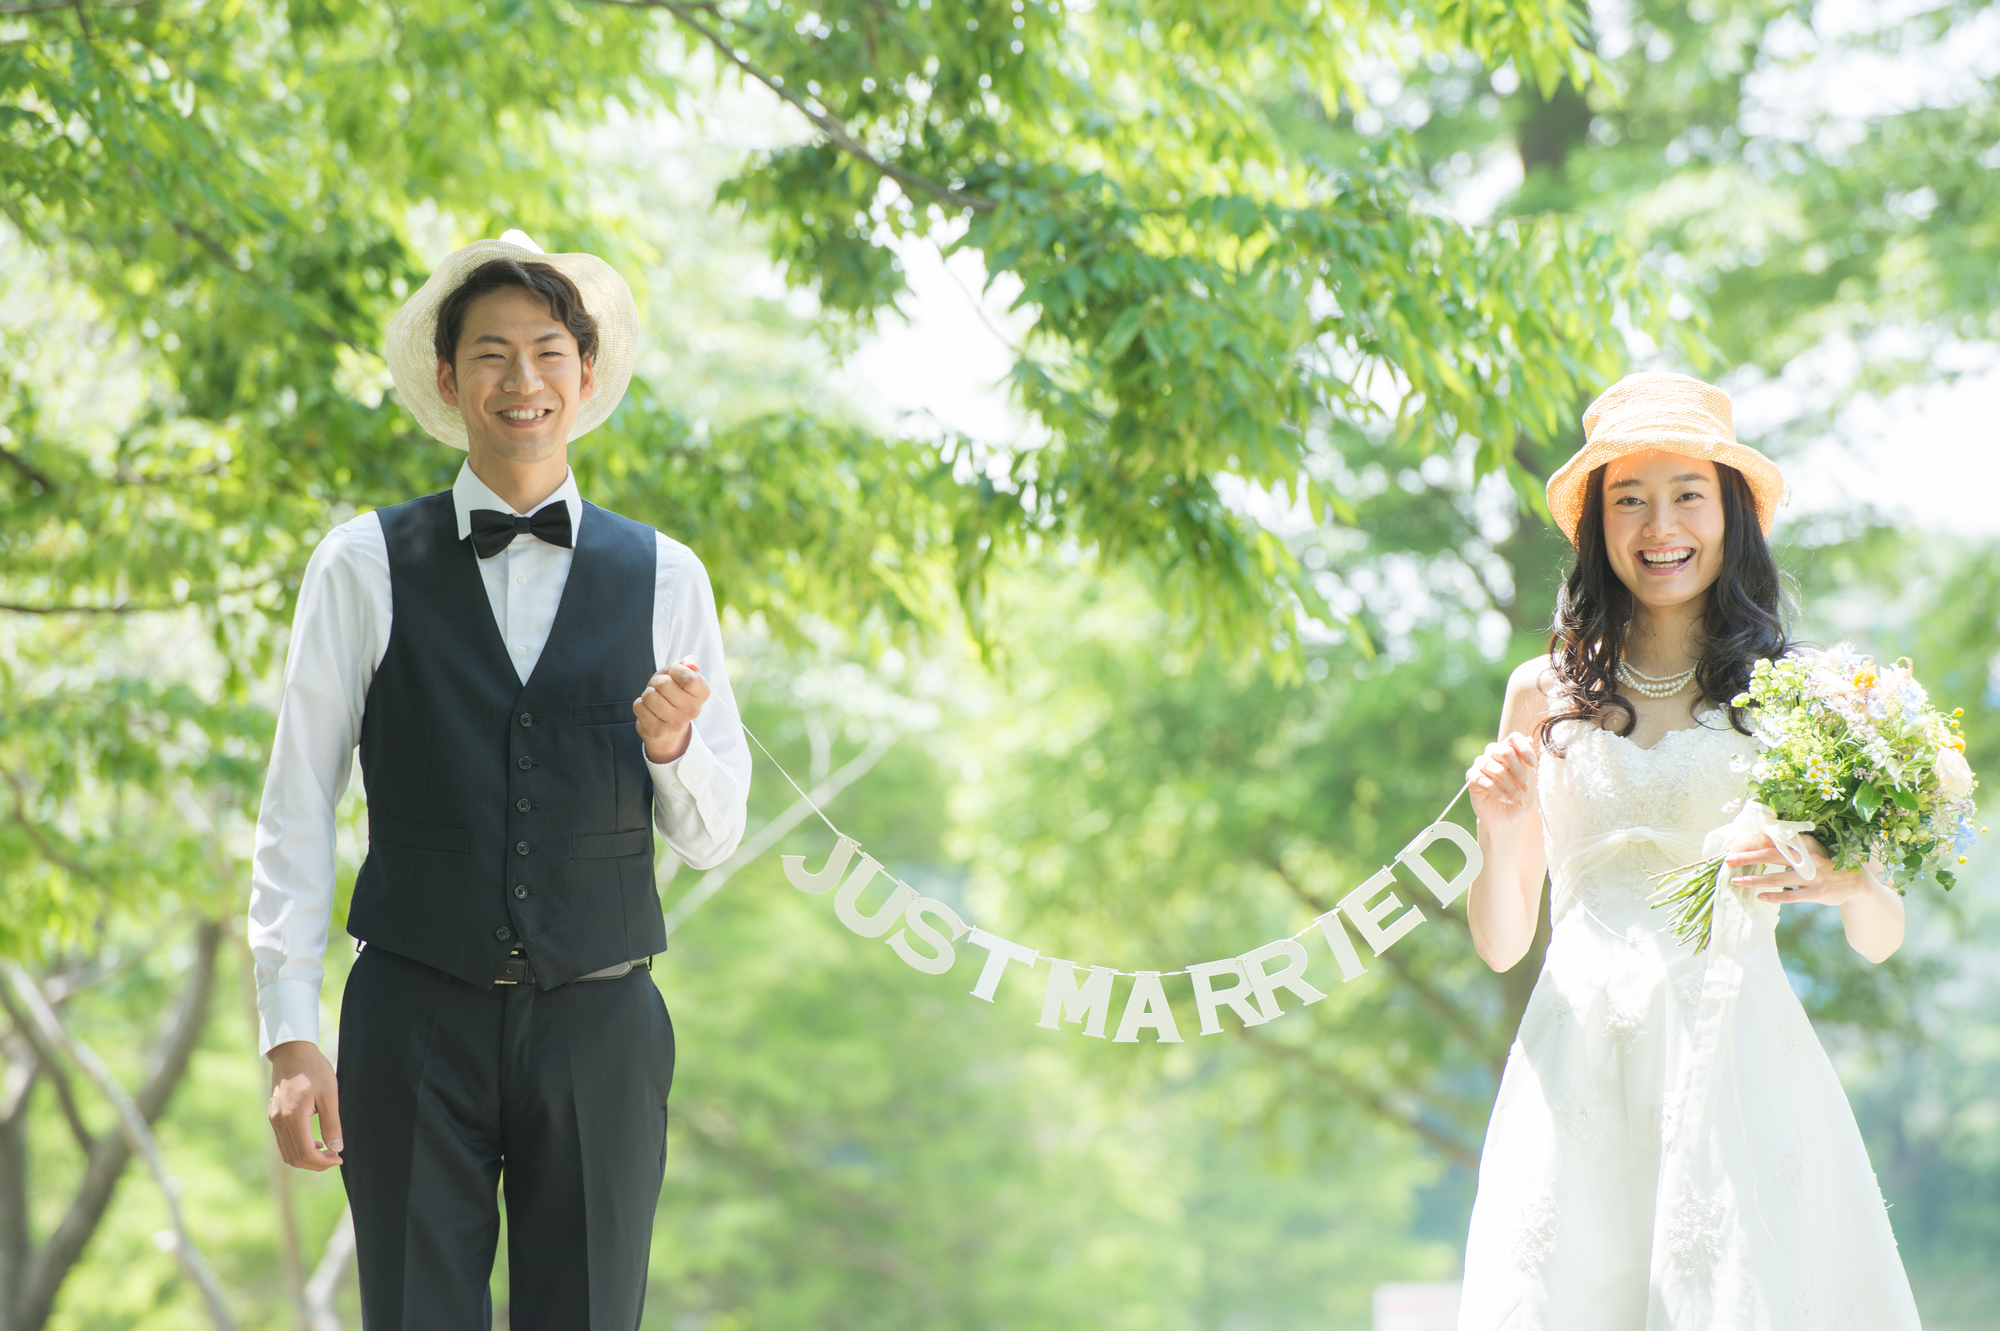 3密を回避 コロナ禍における結婚式の挙げ方を徹底解説 東京の結婚式 結婚式場 ホテル椿山荘東京 公式